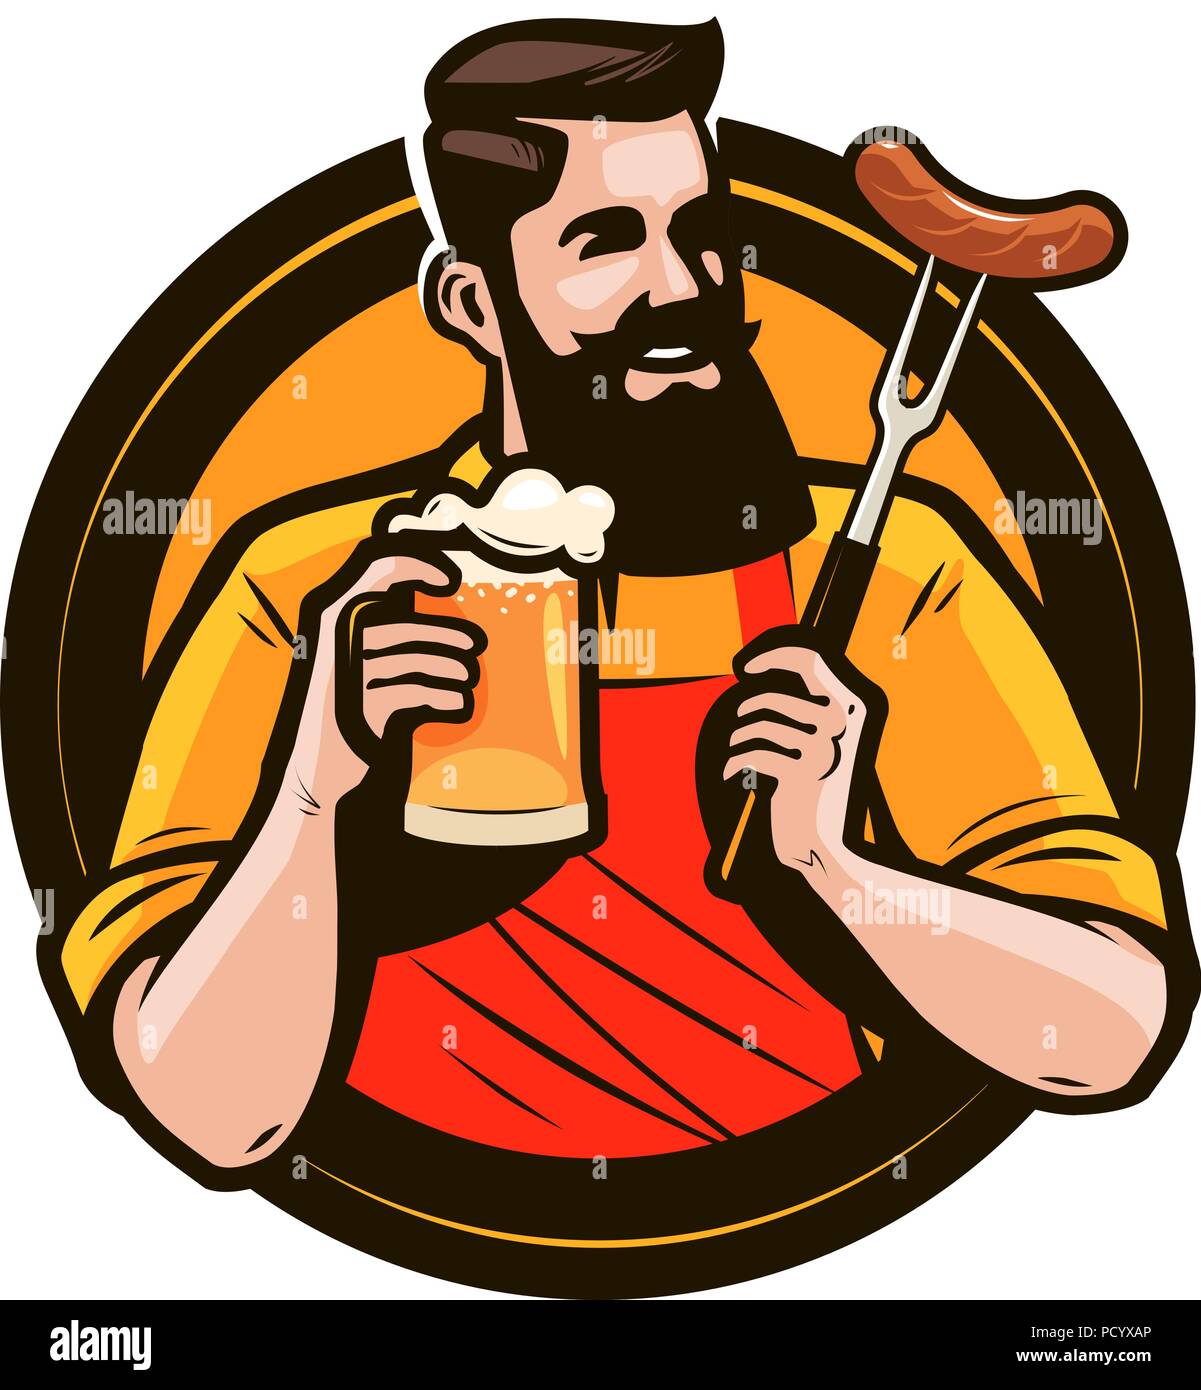 Uomo felice tenendo un boccale di birra fresca. Birreria, pub, alcool bere logo o etichetta. Illustrazione Vettoriale Illustrazione Vettoriale